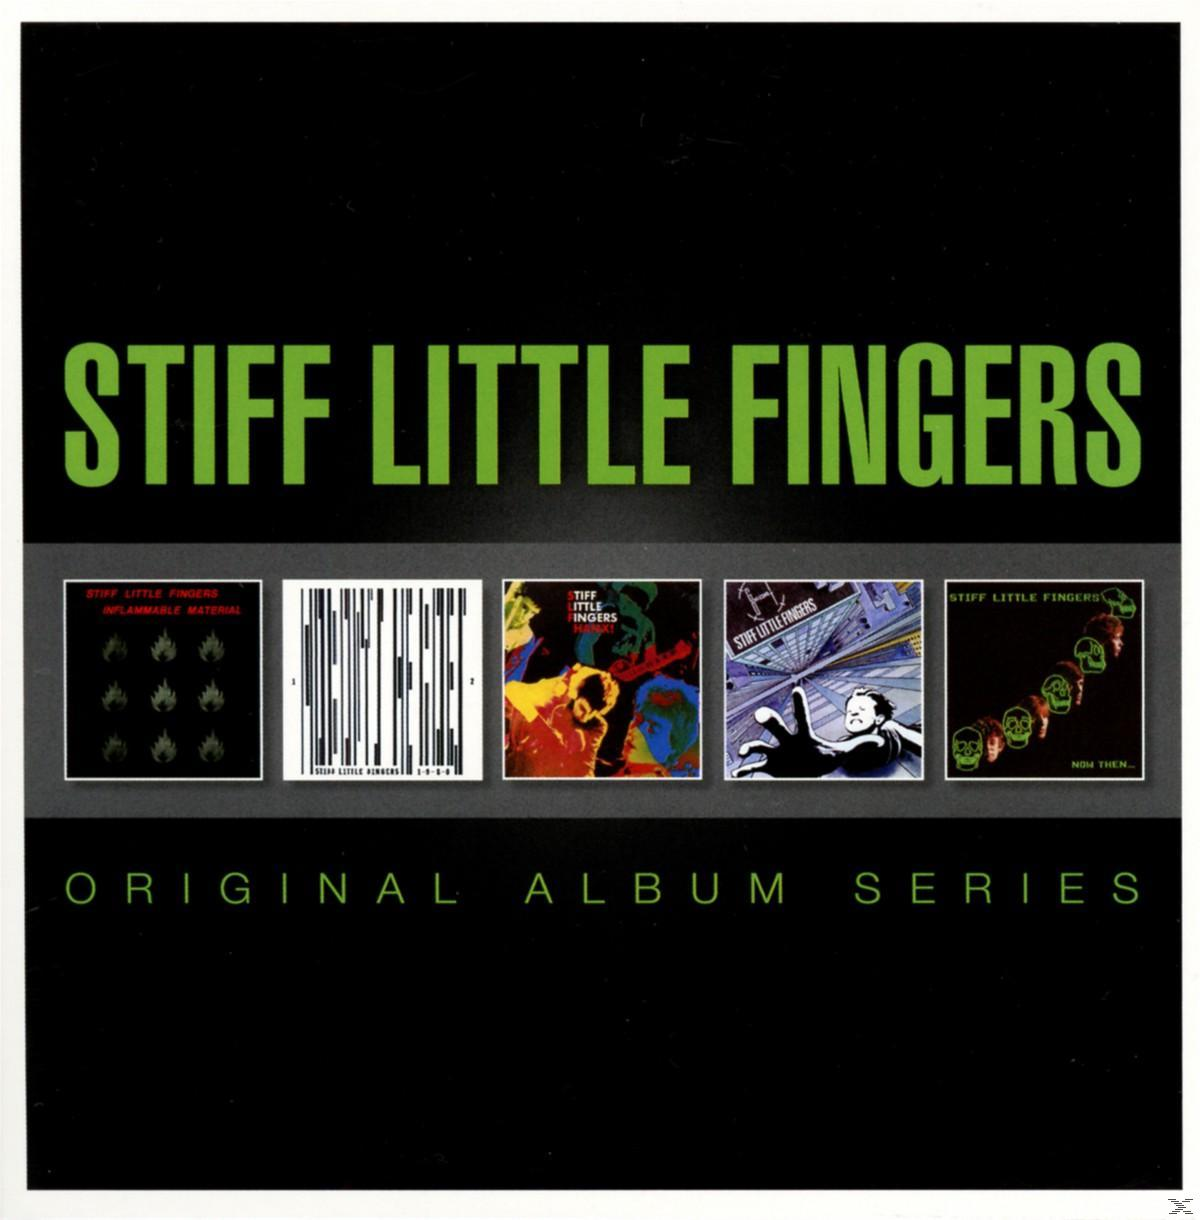 Stiff Series Fingers Album Original Little (CD) - -